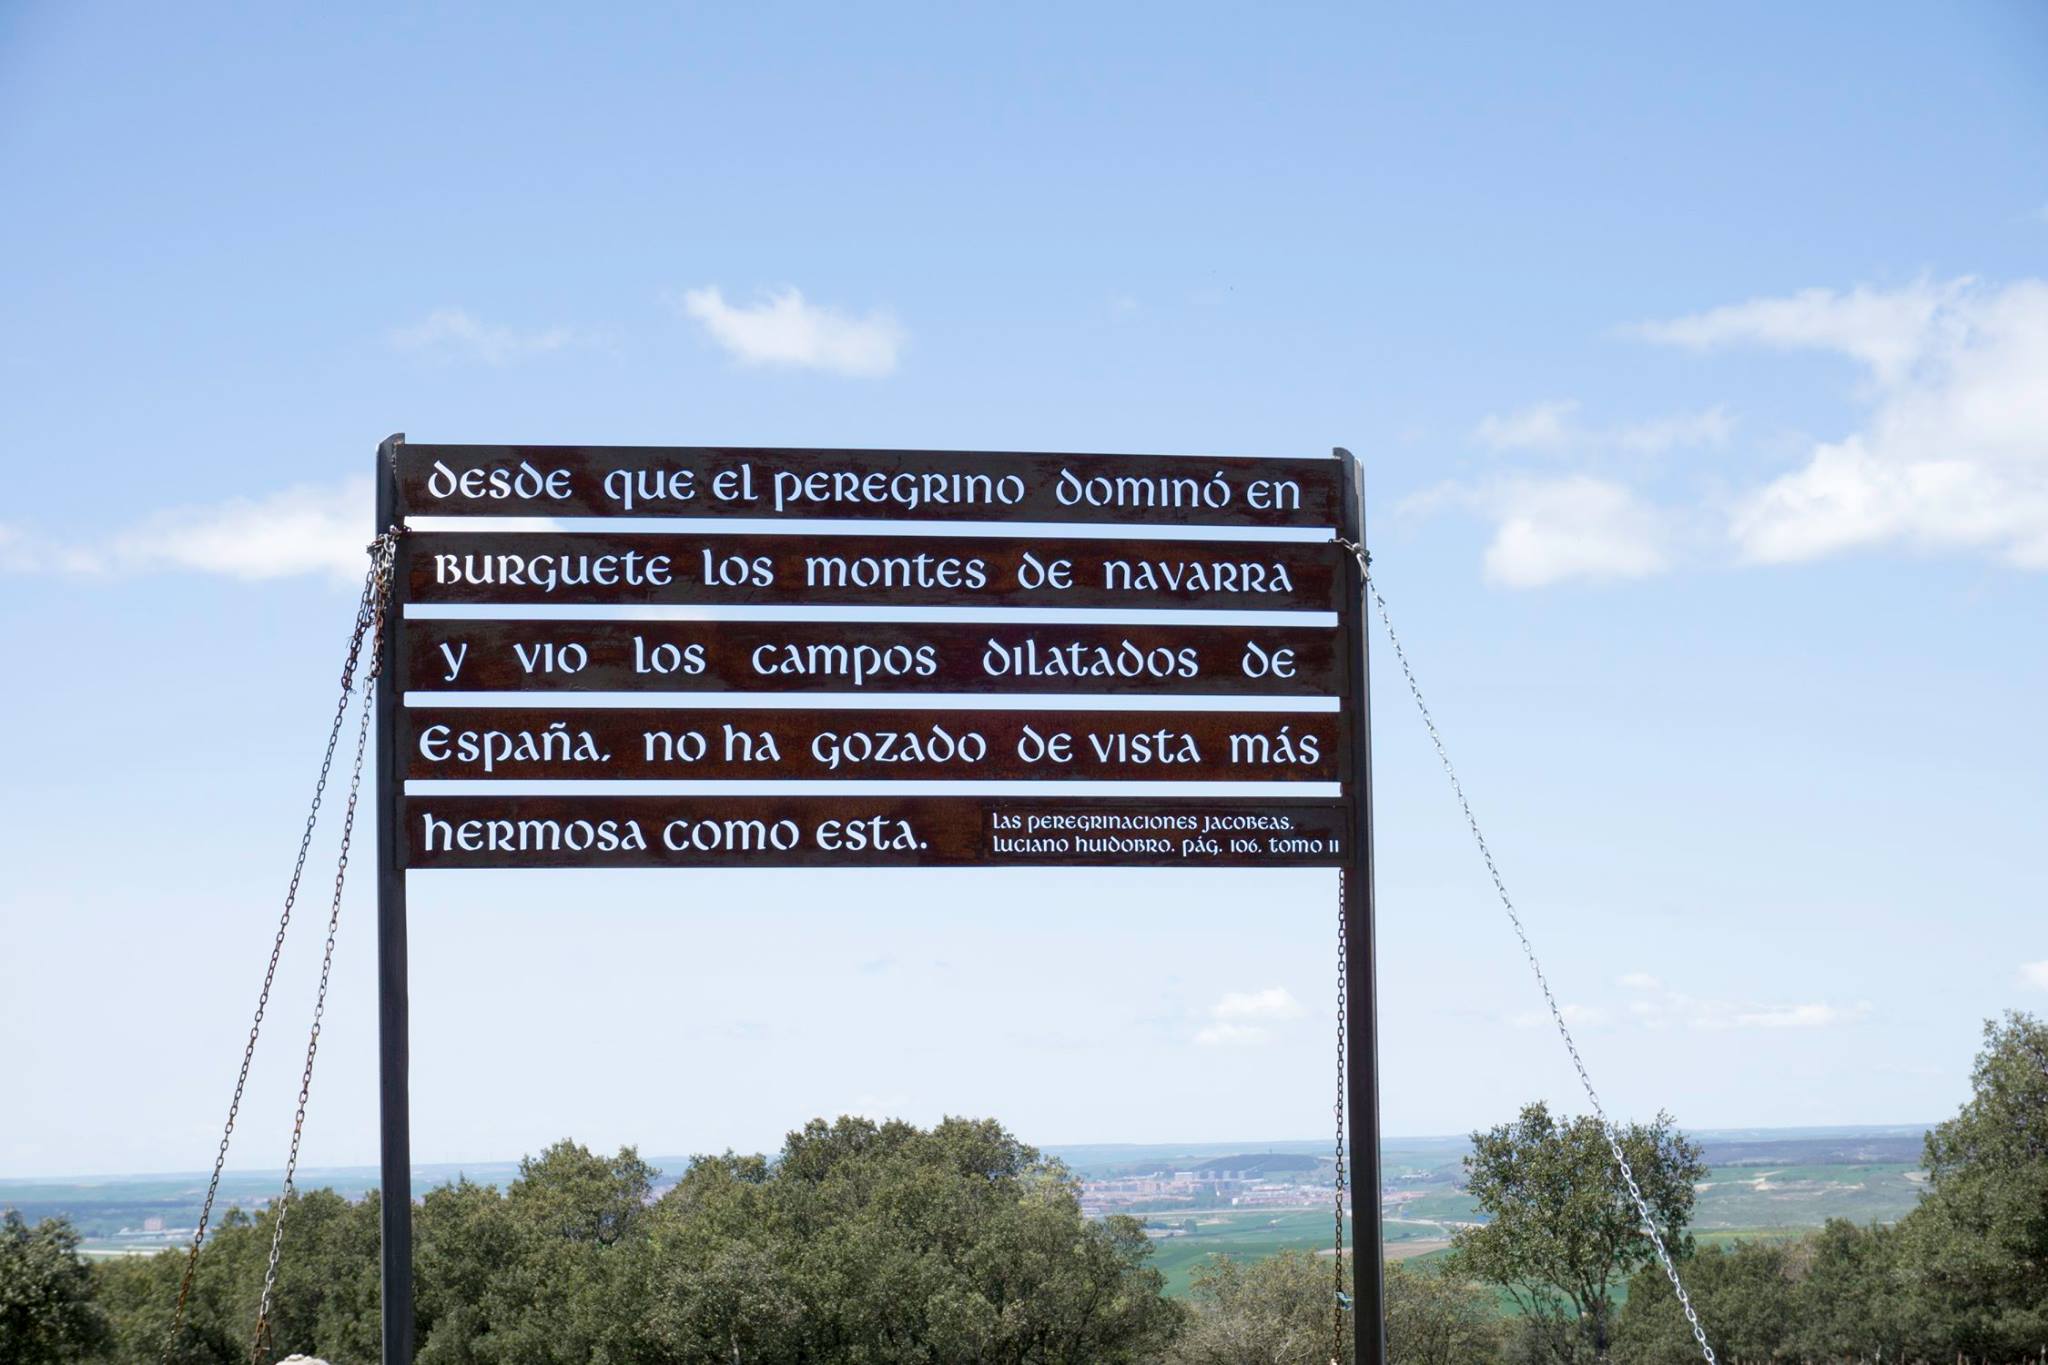 Scritta Atapuerca "Desde que el peregrino domino' en Burguete los montes de Navarra y vio los campos dilatodos de Espana, no ha gozado de vista mas hermosa como esta"